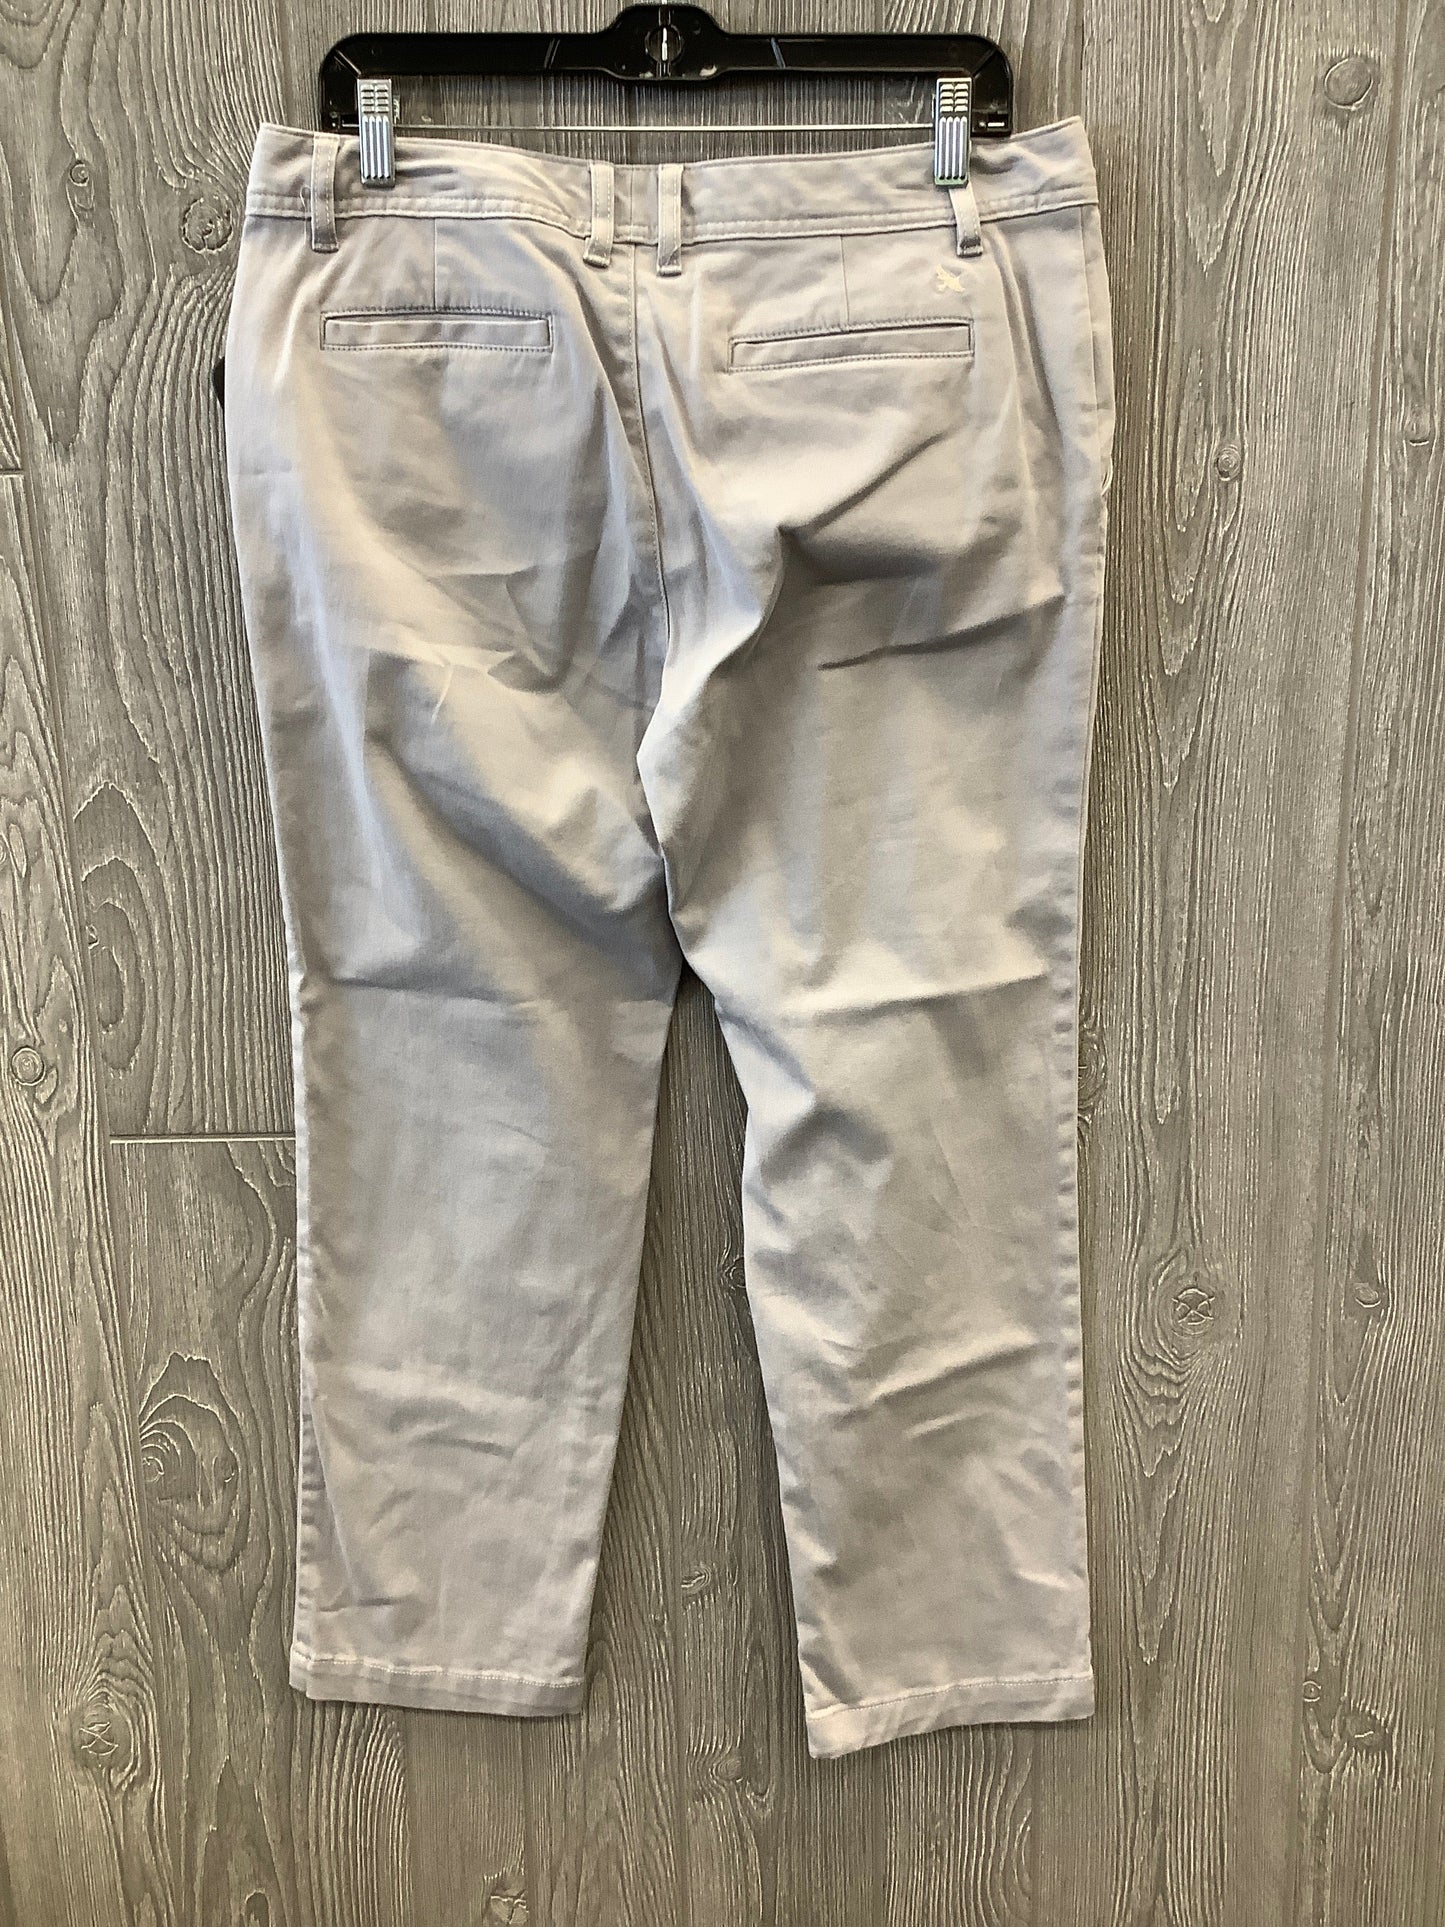 Grey Jeans Straight Eddie Bauer, Size 8